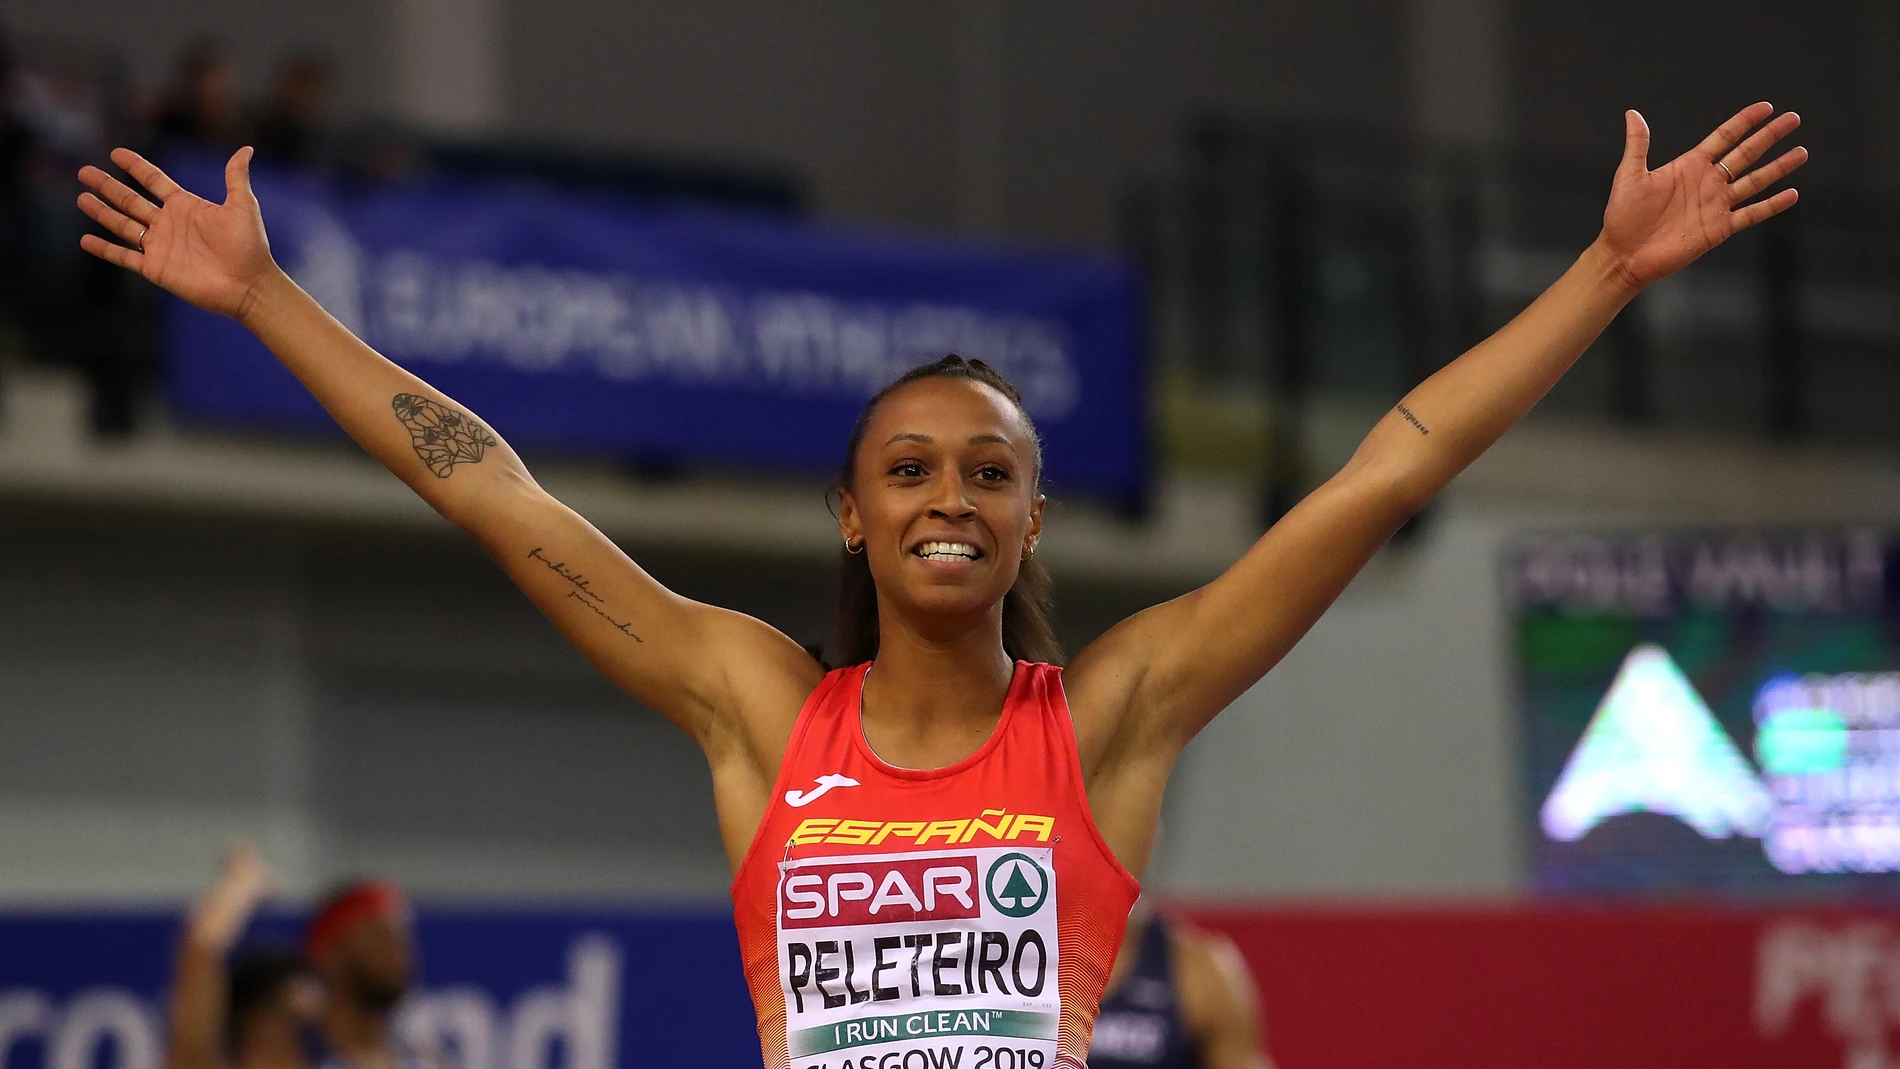 La atleta Ana Peleteiro, bronce en los Juegos Olímpicos de Tokio.